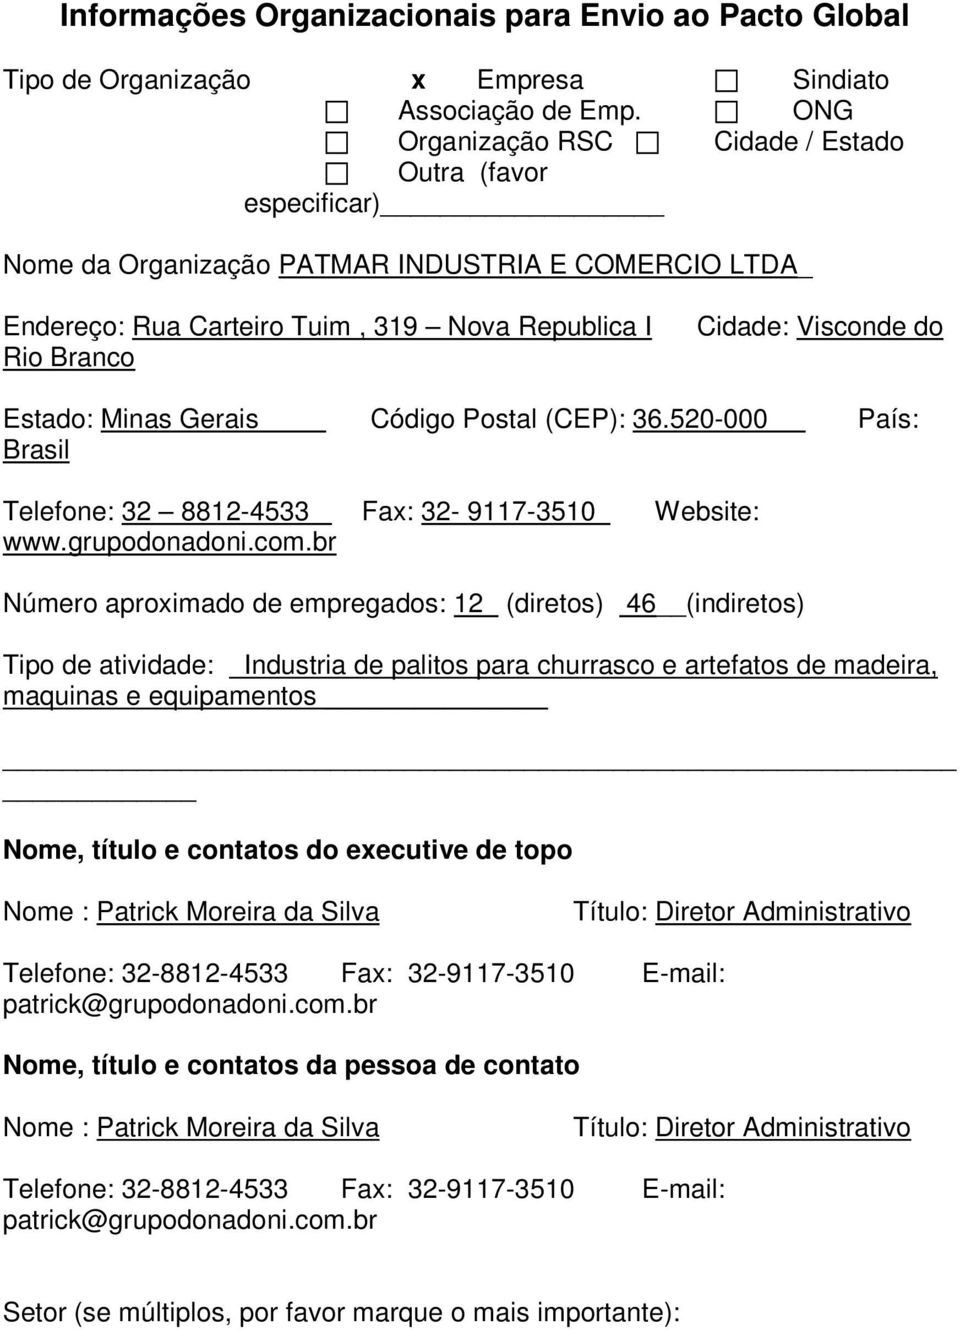 Estado: Minas Gerais Código Postal (CEP): 36.520-000 País: Brasil Telefone: 32 8812-4533 Fax: 32-9117-3510 Website: www.grupodonadoni.com.